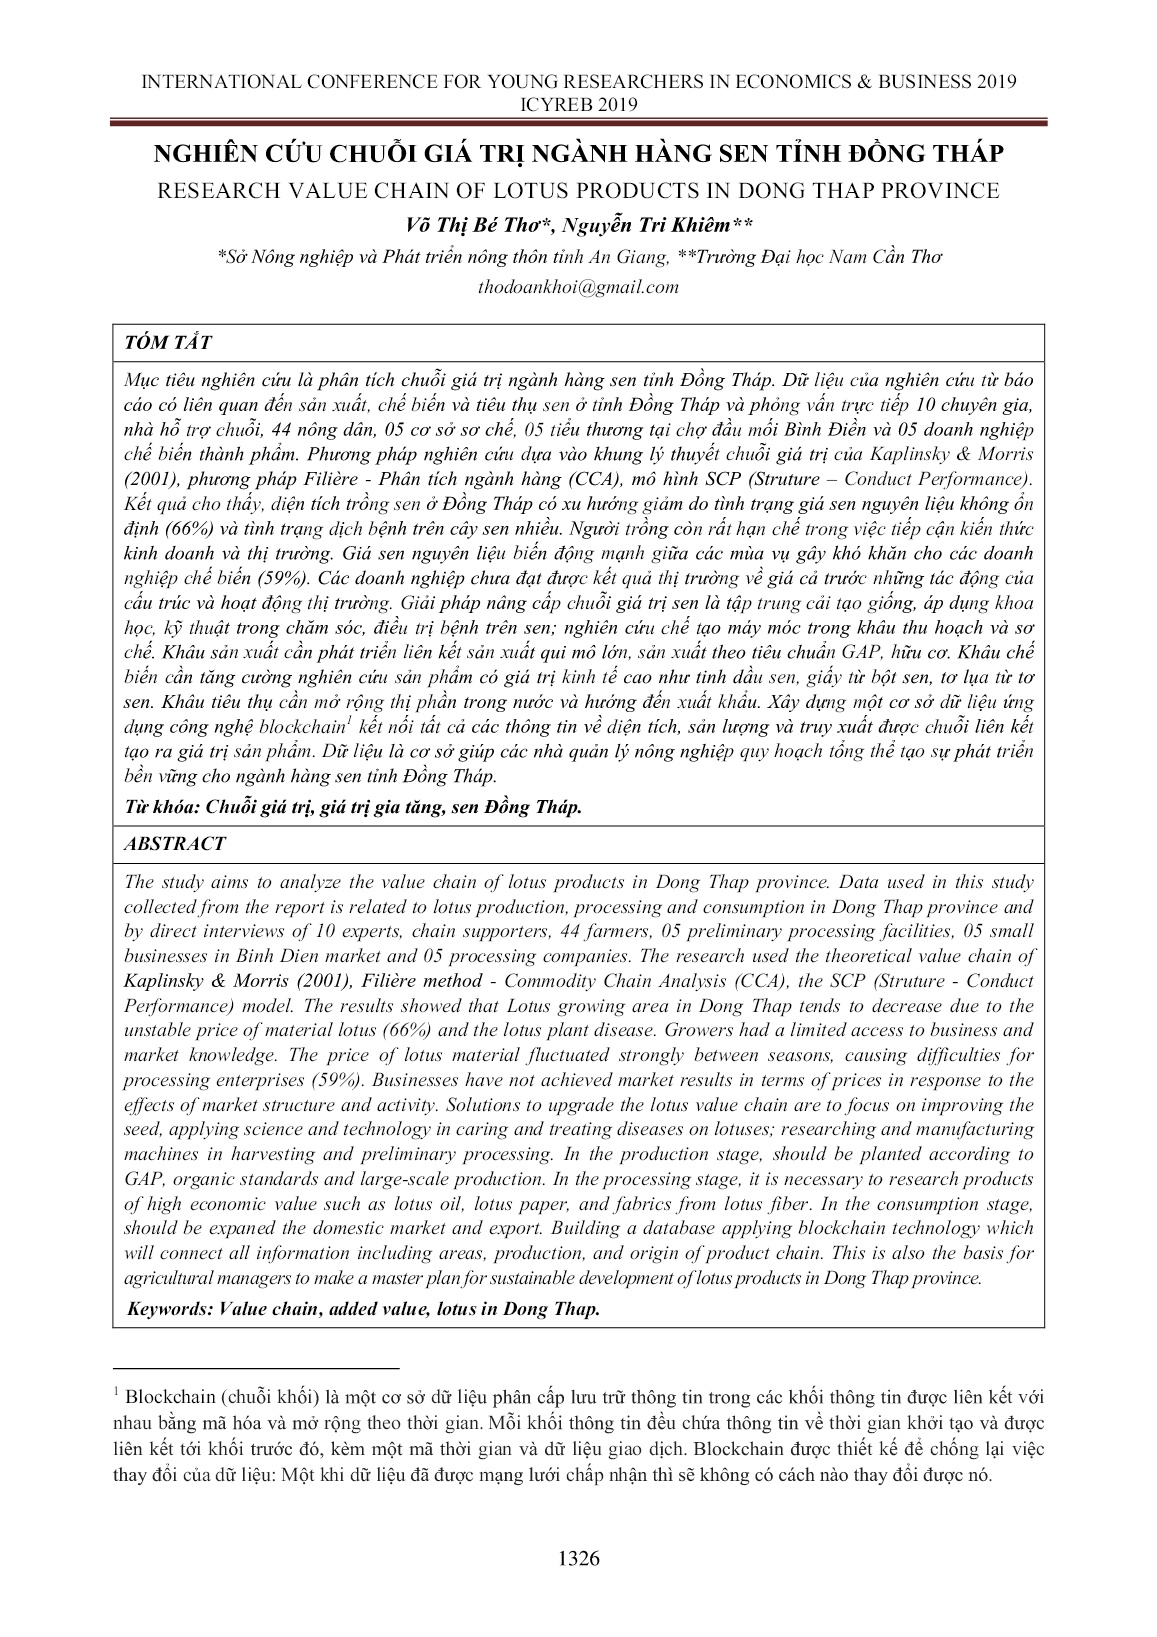 Nghiên cứu chuỗi giá trị ngành hàng sen tỉnh Đồng Tháp trang 1